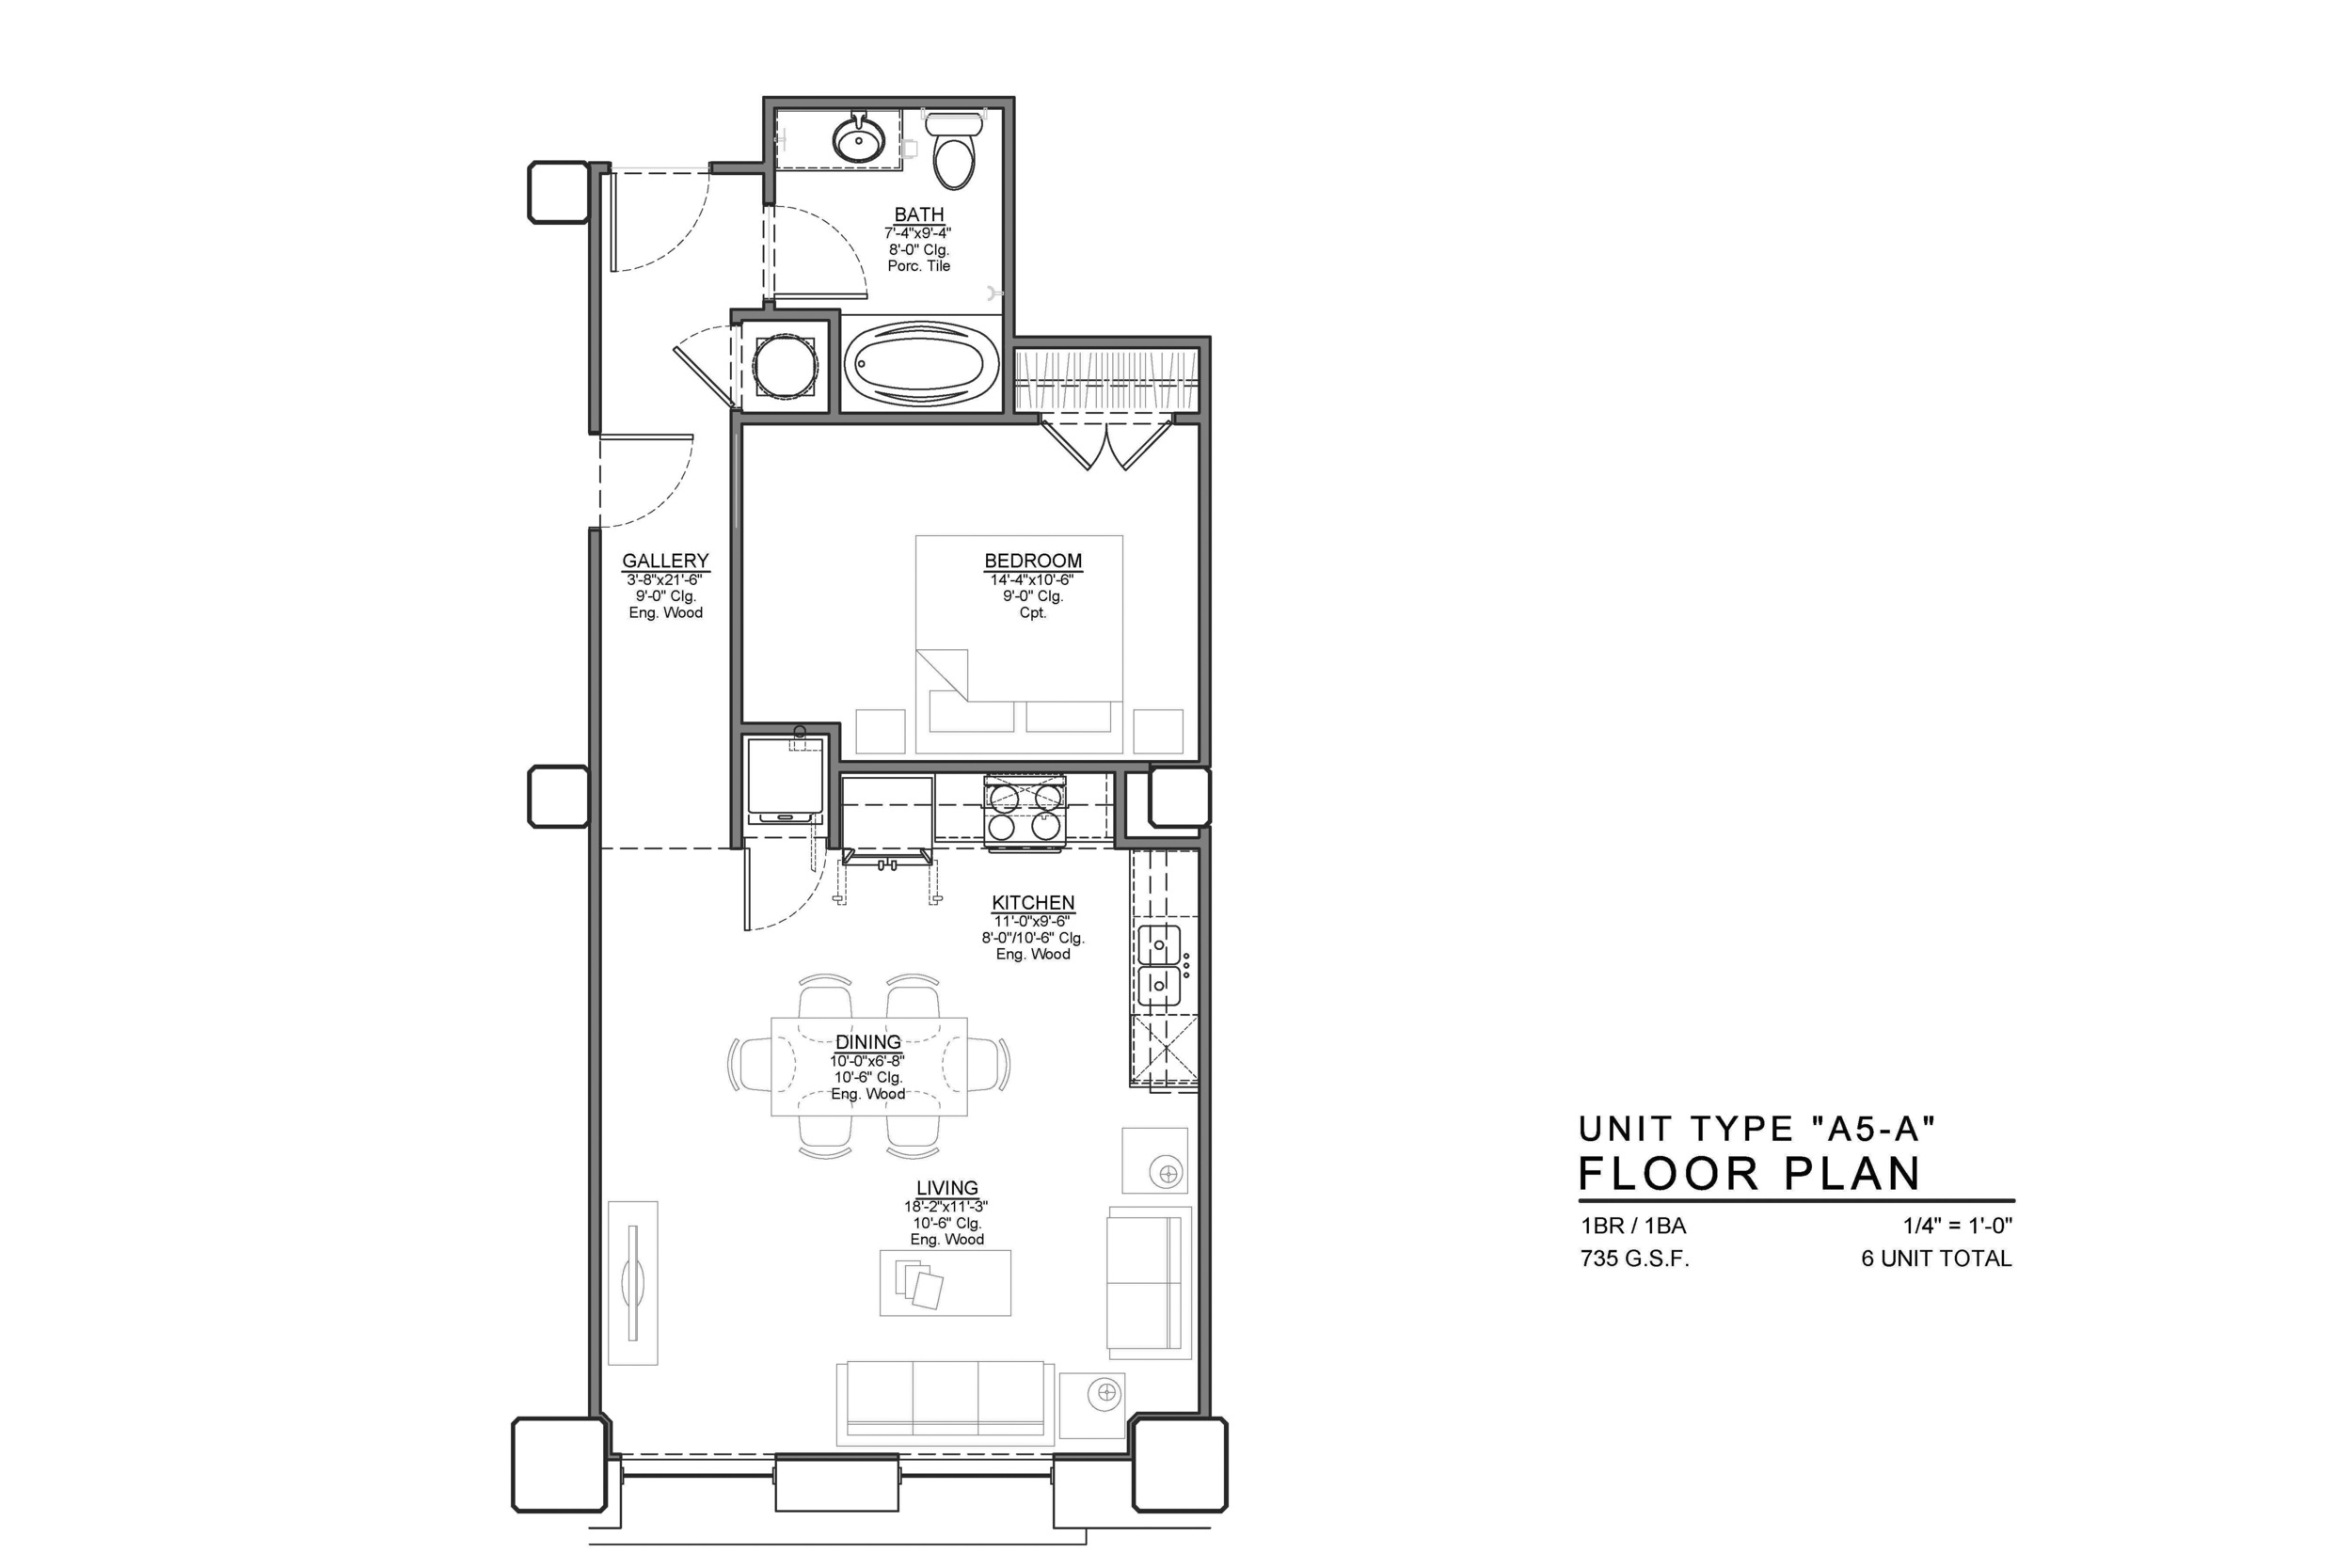 A5-A FLOOR PLAN: 1 BEDROOM / 1 BATH